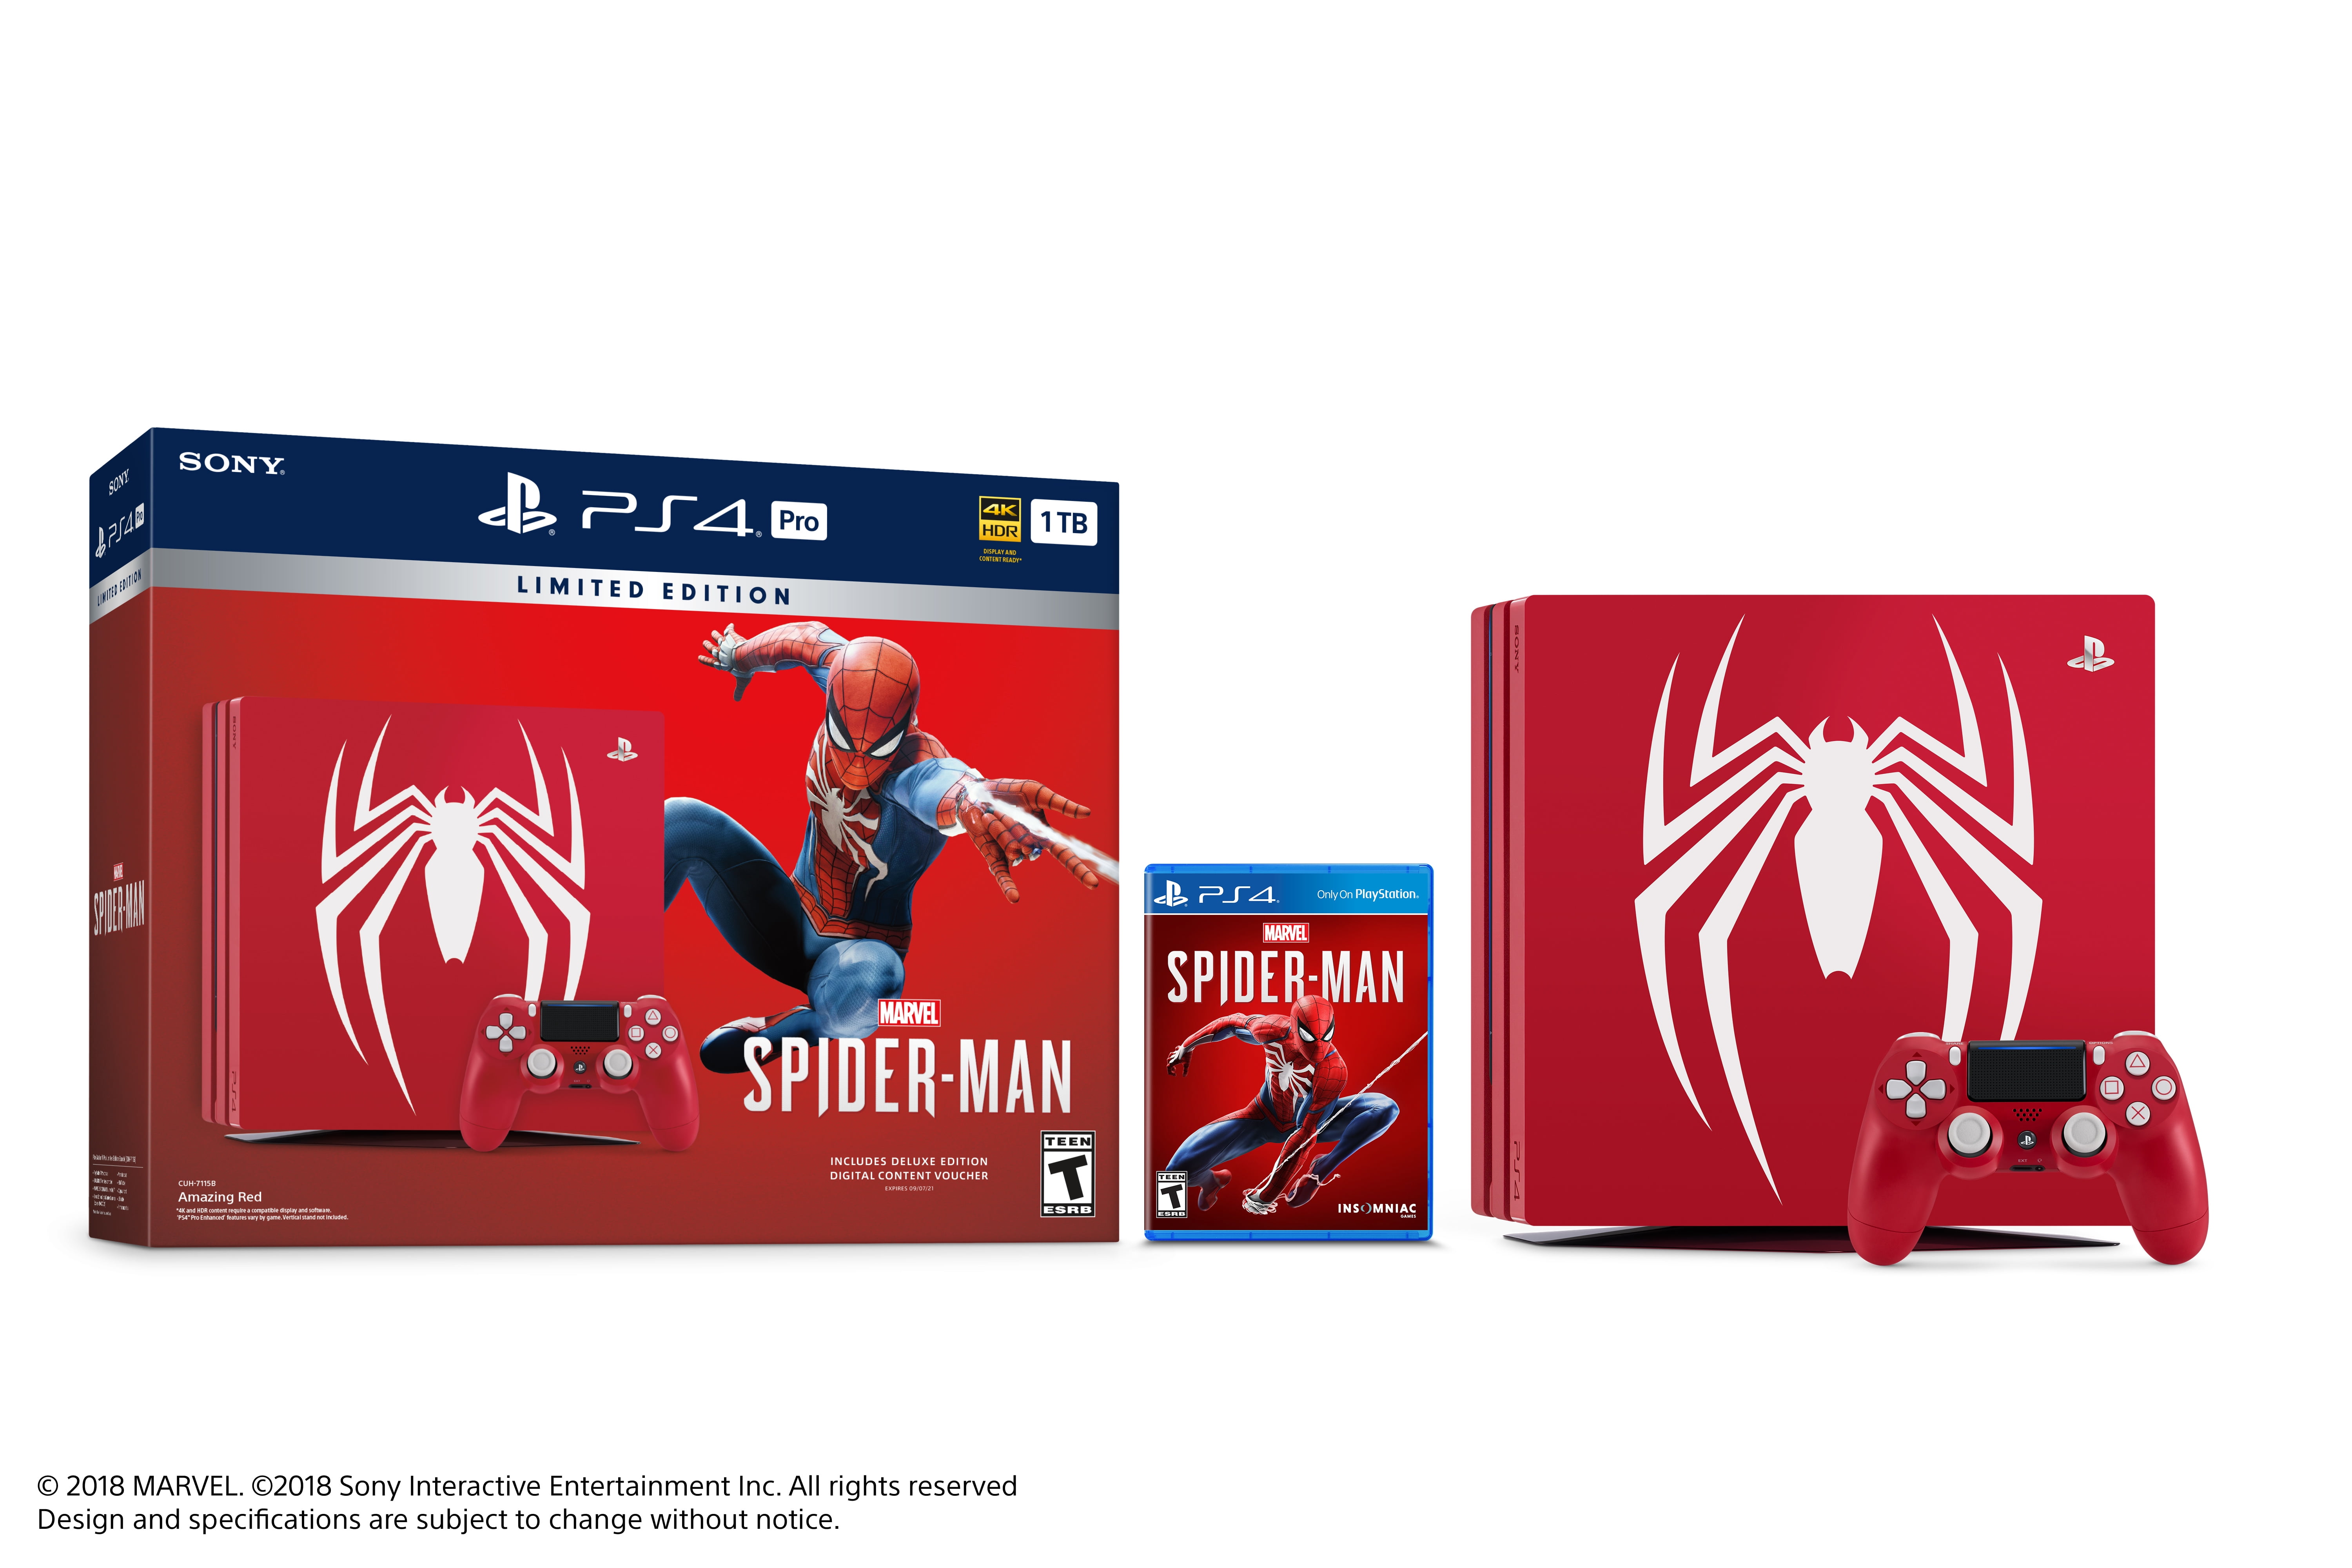 Spider-Man Remastered Graphic Comparison – PS5 vs. PS4 Pro